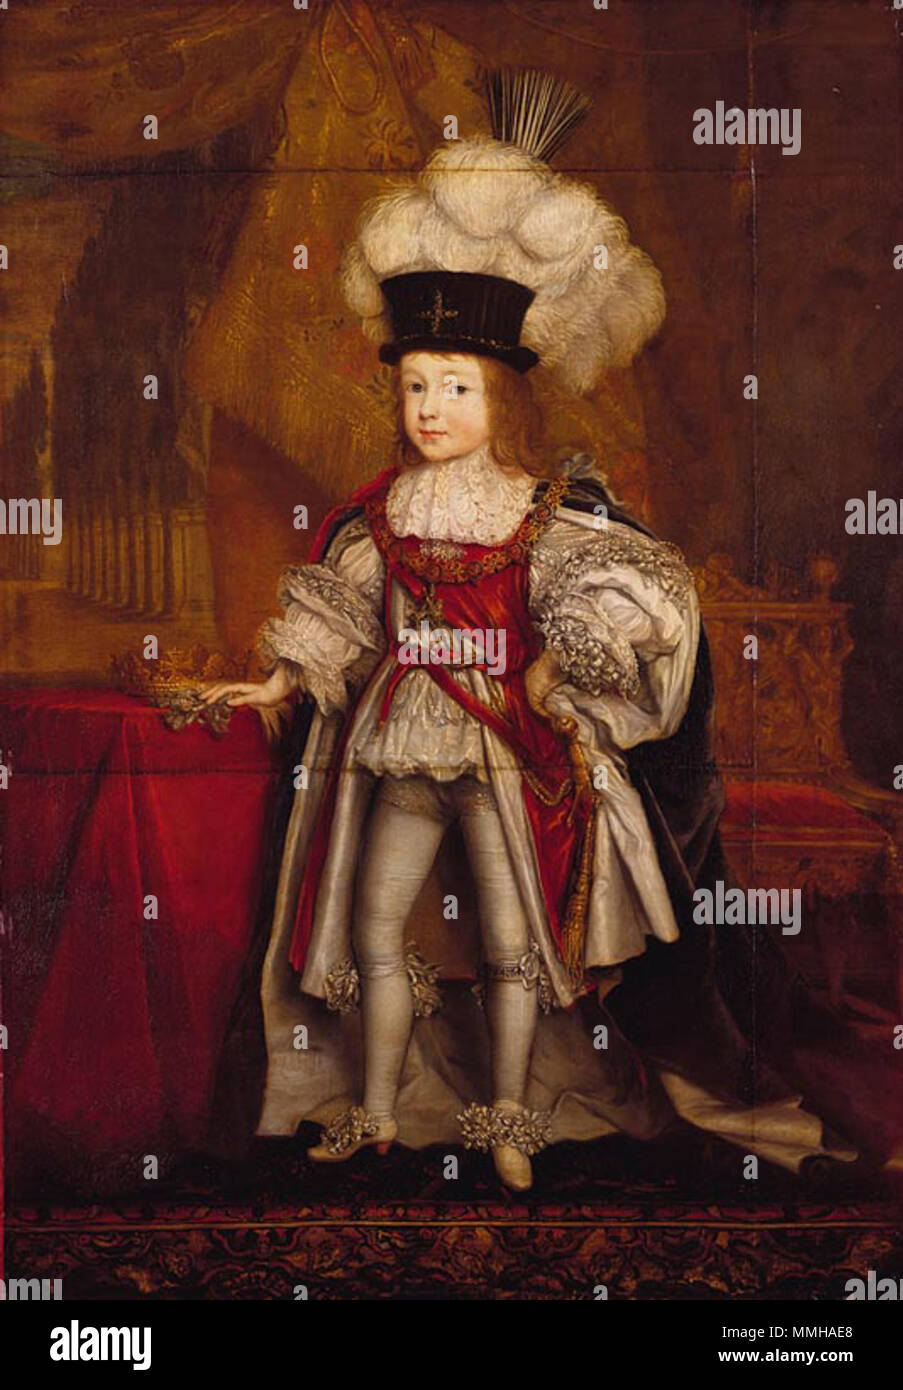 . Gezeigt stehen in voller Länge trägt er die aufwändige Roben und gefiederten Hut der Reihenfolge der Strumpfband und ruht seine rechte Hand auf einen gedeckten Tisch, auf dem sich die königliche herzoglichen Coronet. James Stuart (1663-67). 1666 oder 1667. James, Herzog von Cambridge - Wright 1666-7 Stockfoto